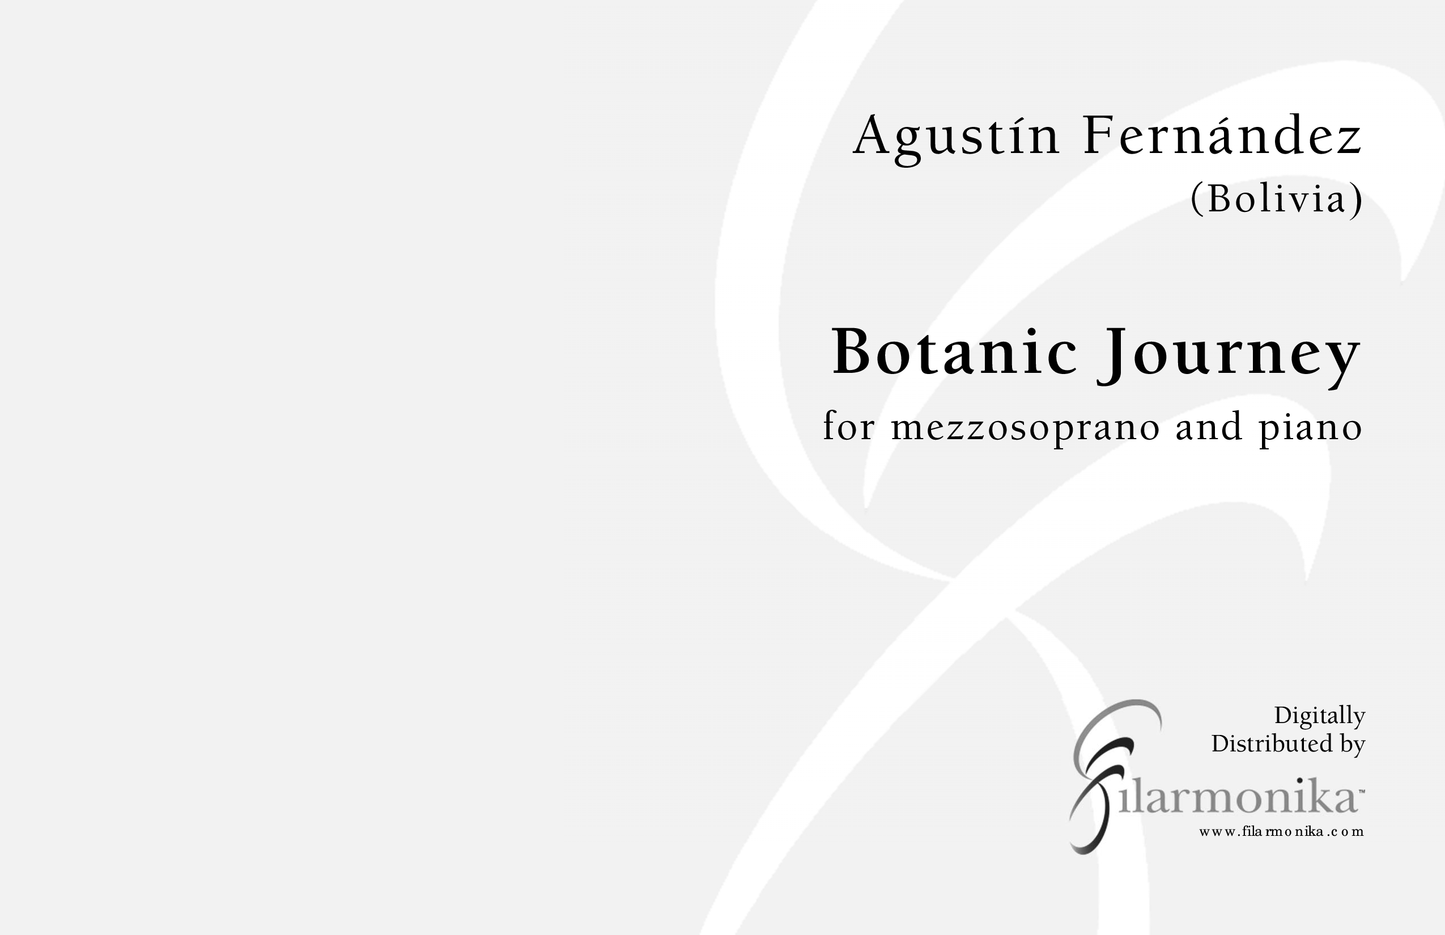 Botanic Journey, for mezzo and piano